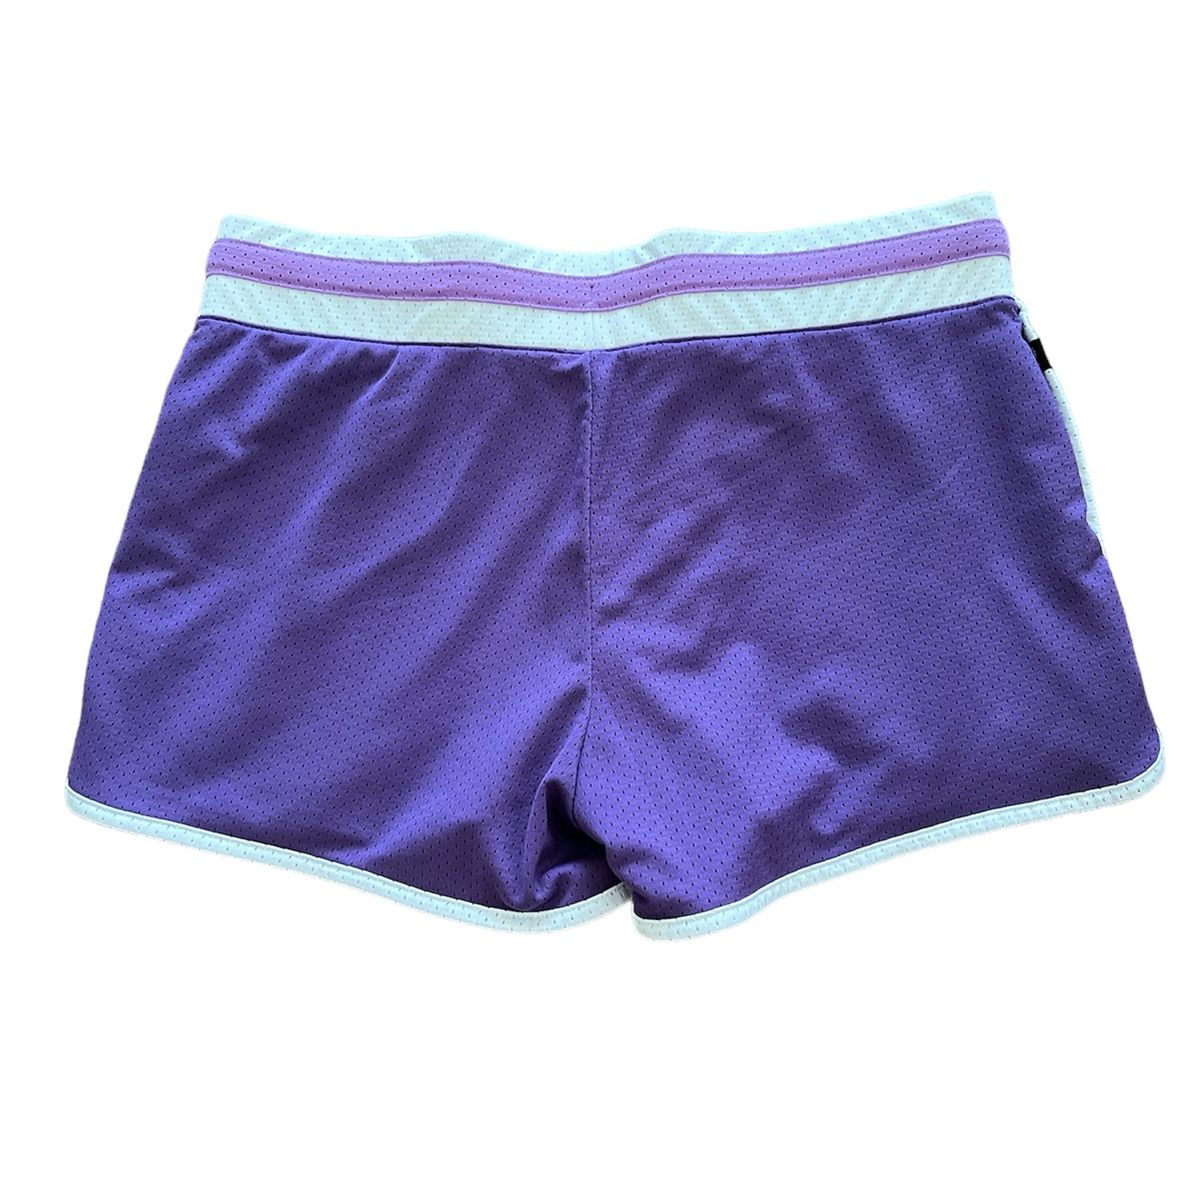 Nike Purple Shorts! Tamanho M com Bolsos. Linha Especial Atlética